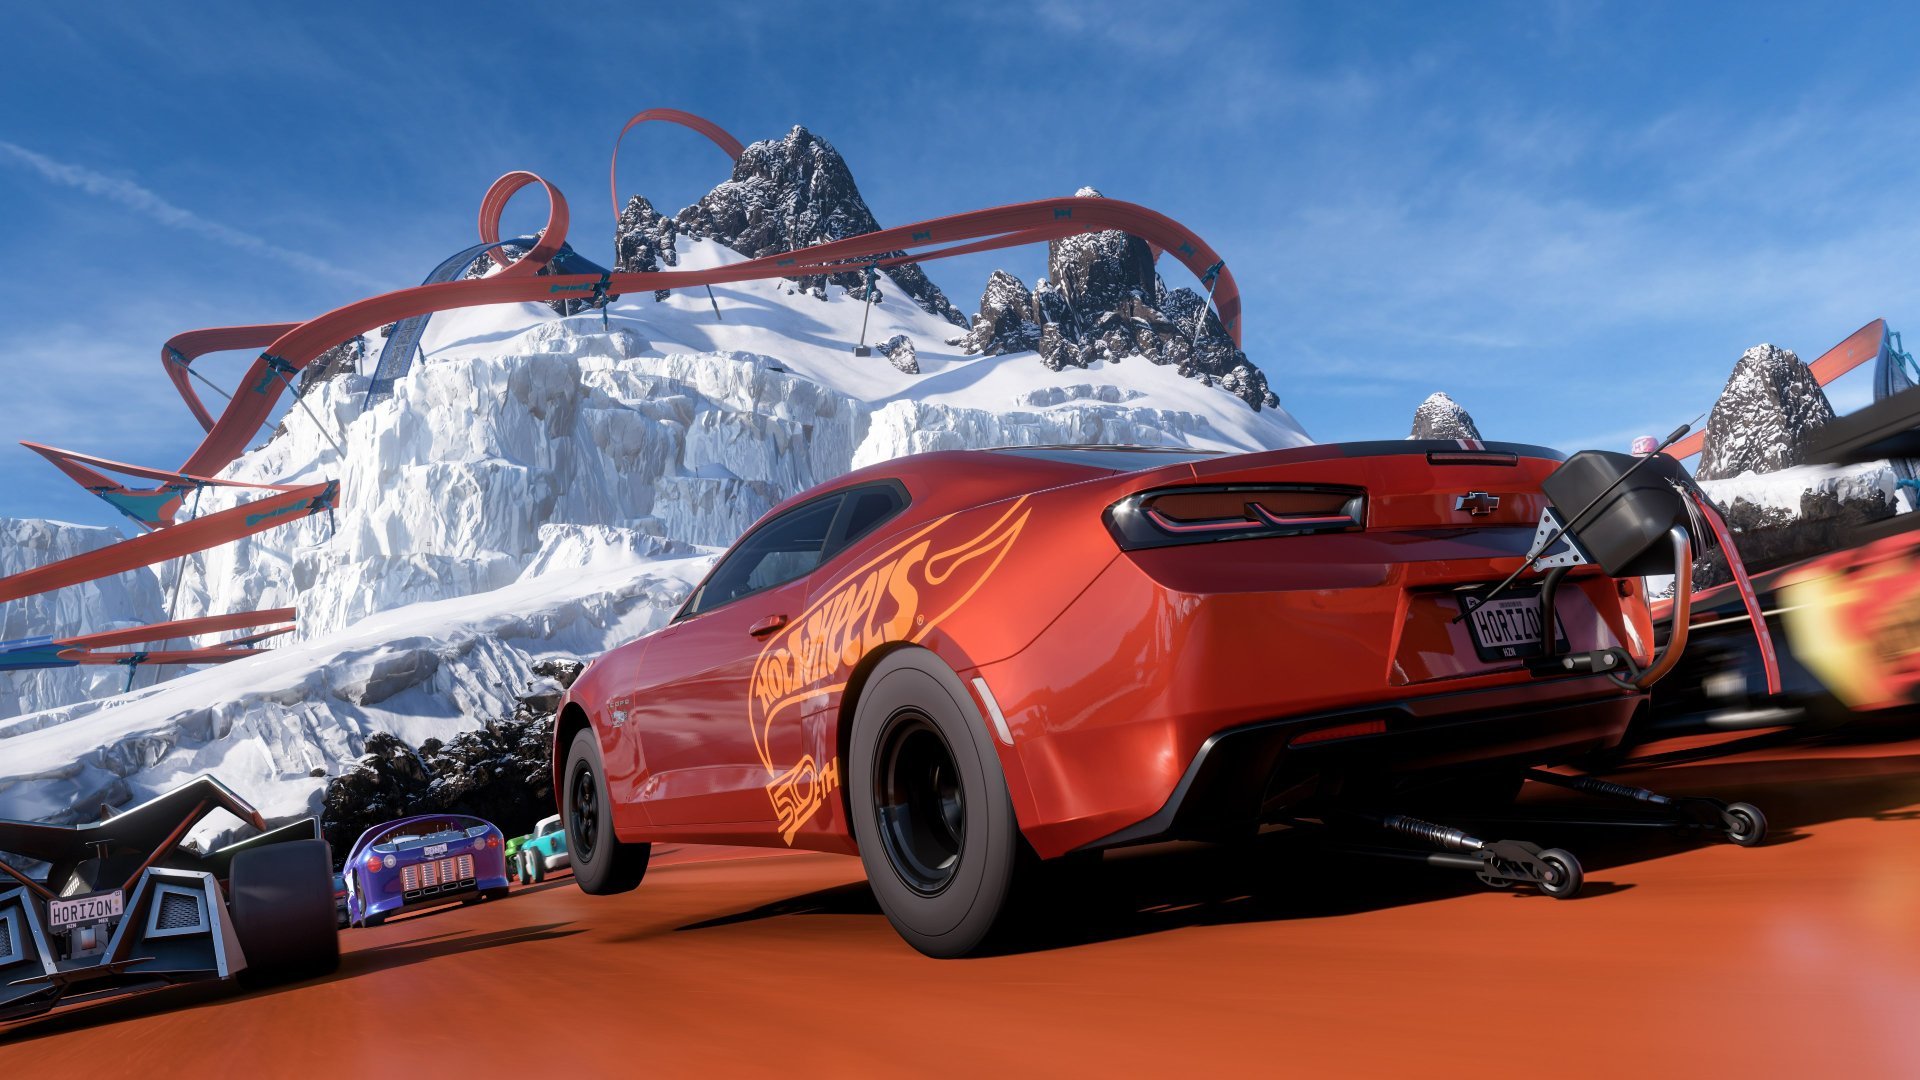 Forza Horizon 5 DLC 'Hot Wheels' launches July 19 - Gematsu